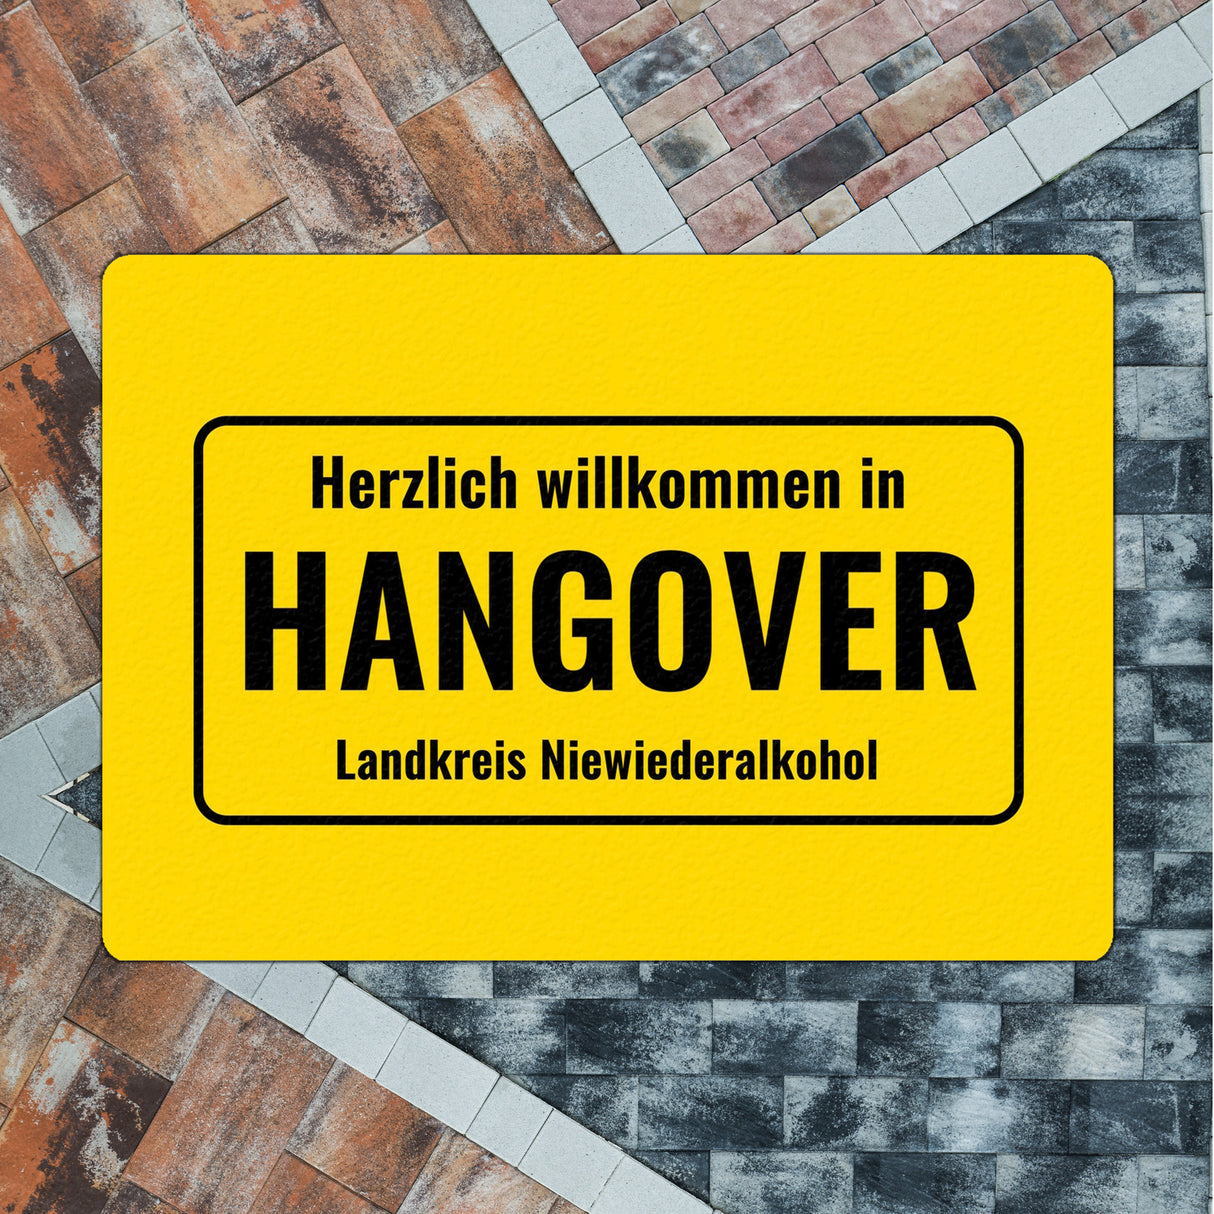 Fussmatte mit Alkohol-Spruch Herzlich willkommen in Hangover. Landkreis Niewiederalkohol